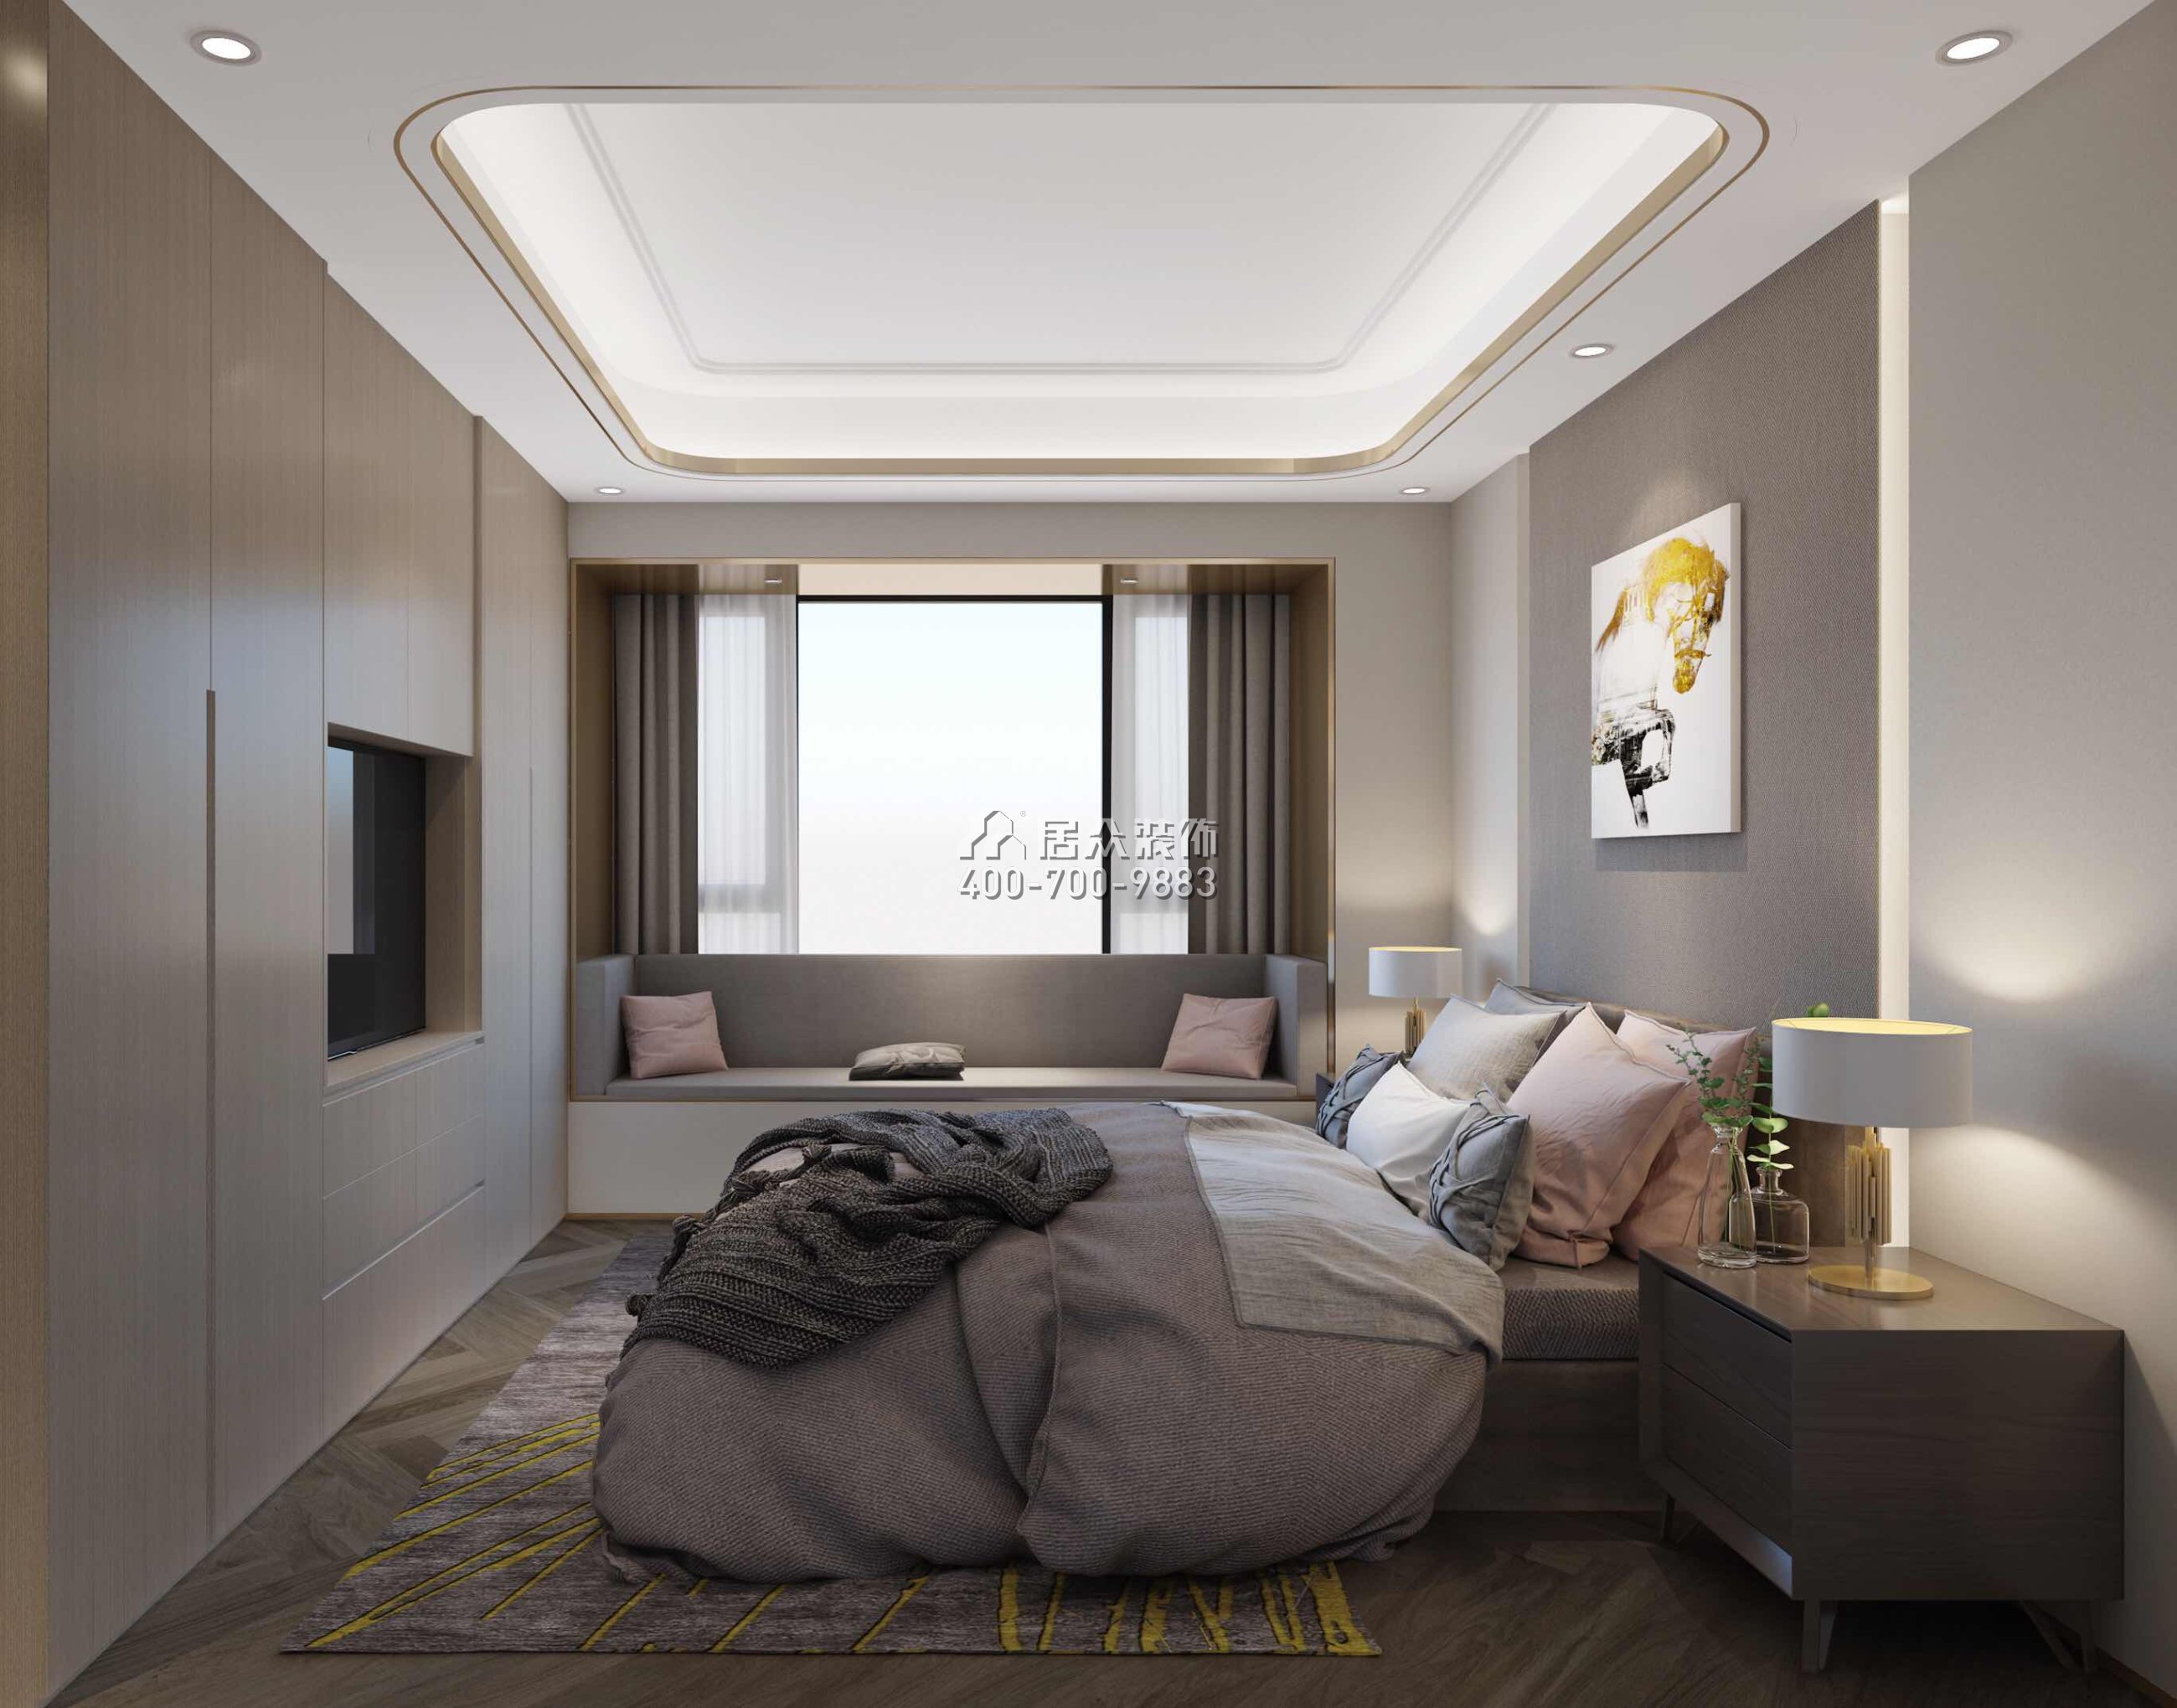 壹方中心170平方米现代简约风格平层户型卧室开元官网效果图